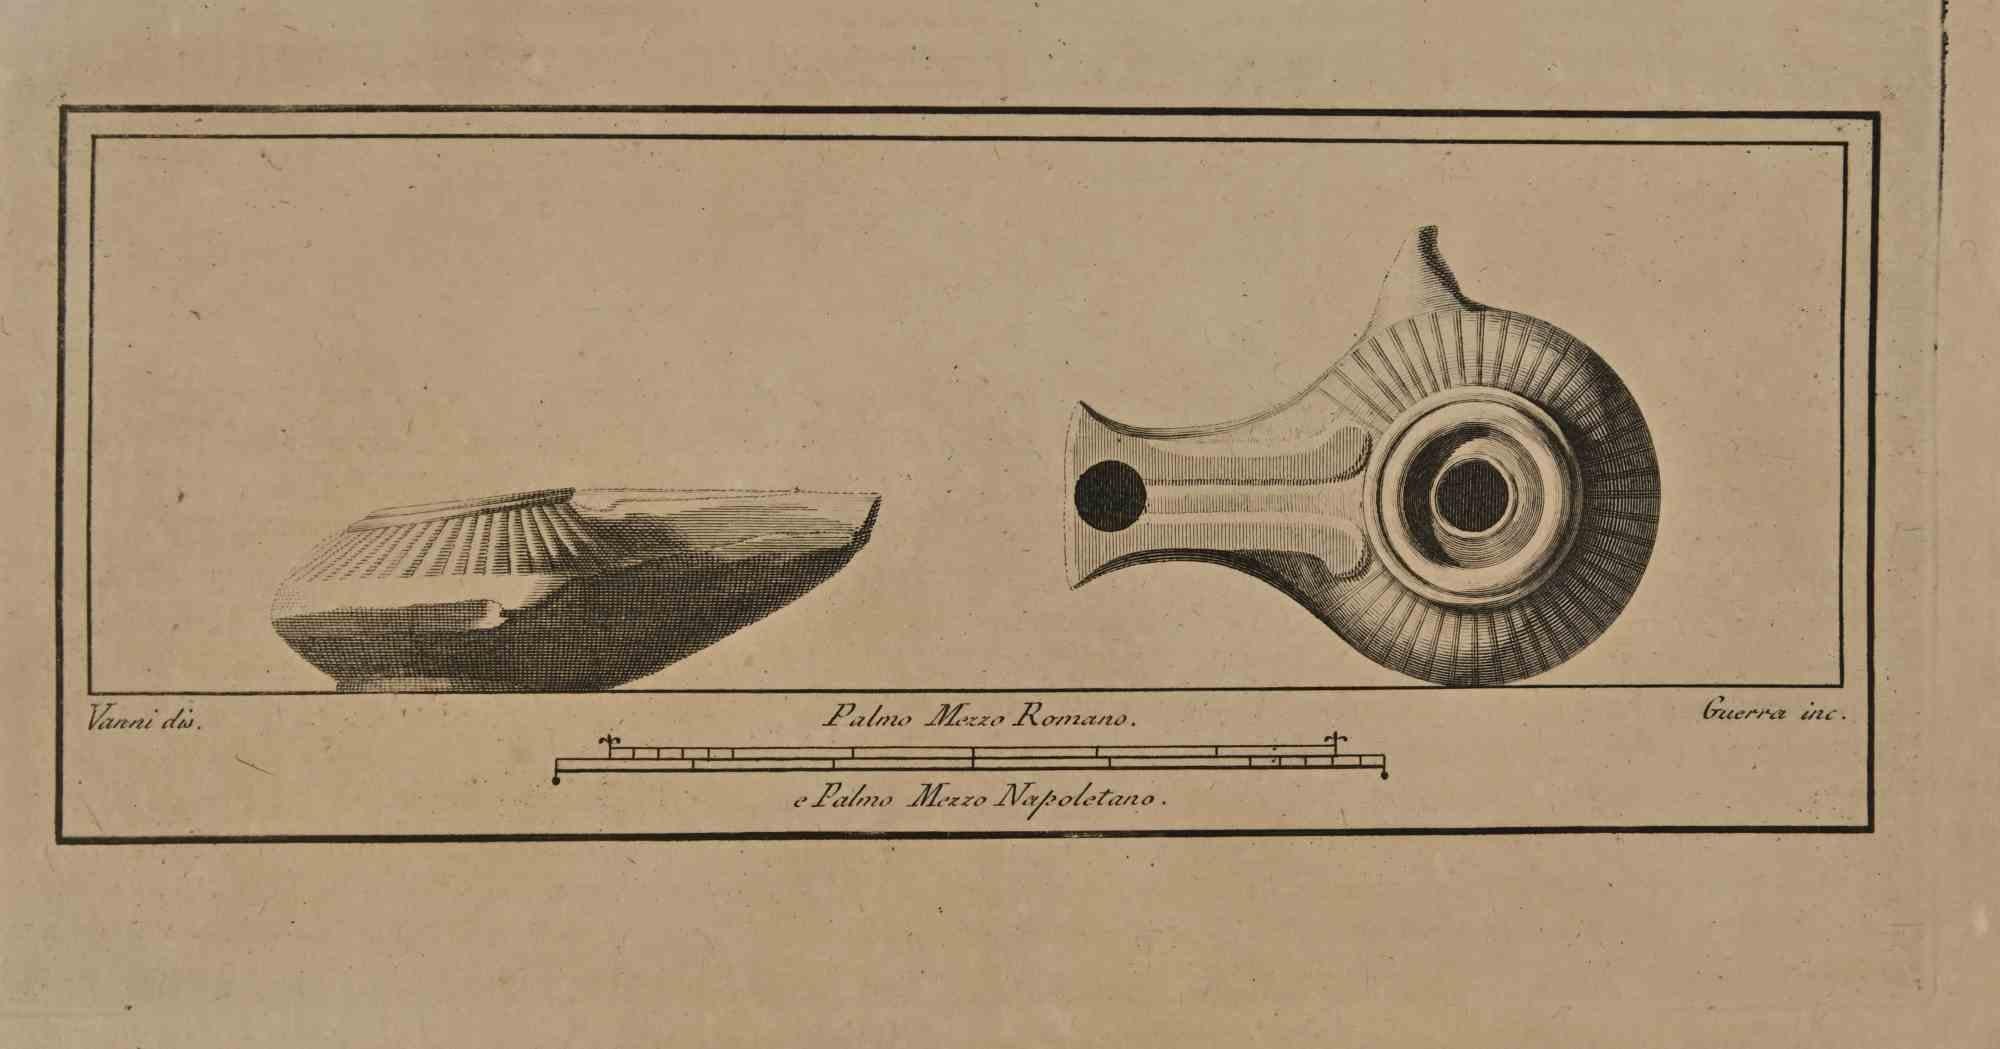 Nature morte de la série "Antiquités d'Herculanum", est une gravure sur papier réalisée par Nicola Vanni et Giovanni Guerra au 18ème siècle.

Signé sur la plaque.

Bonnes conditions à l'exception des signes dus à l'époque.

La gravure appartient à